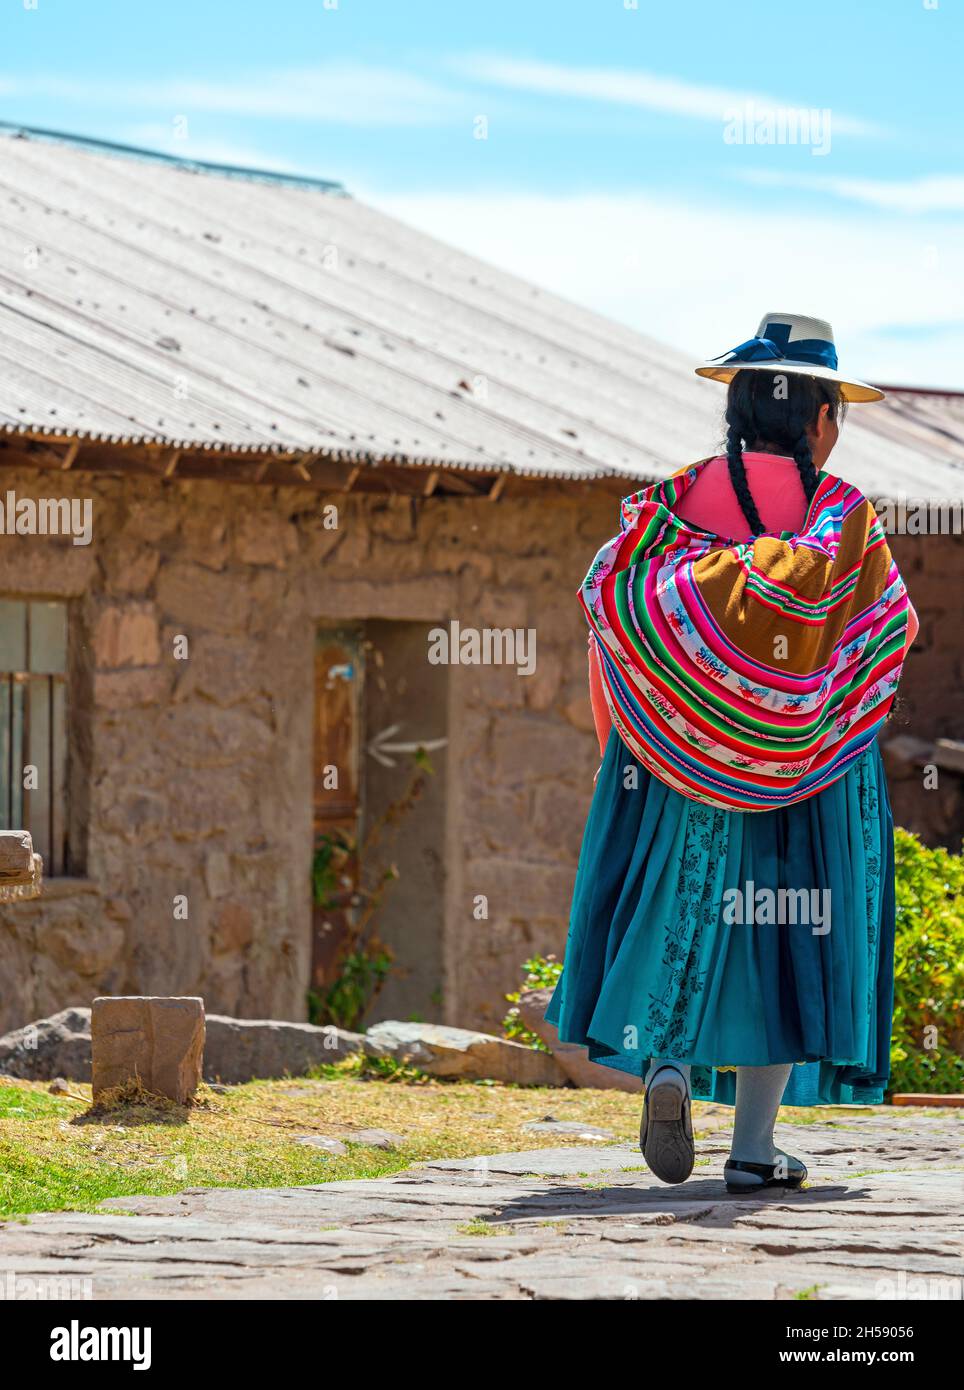 Femme autochtone péruvienne quechua vêtue de vêtements traditionnels marchant dans une rue de l'île Taquile près du lac Titicaca, Pérou. Banque D'Images